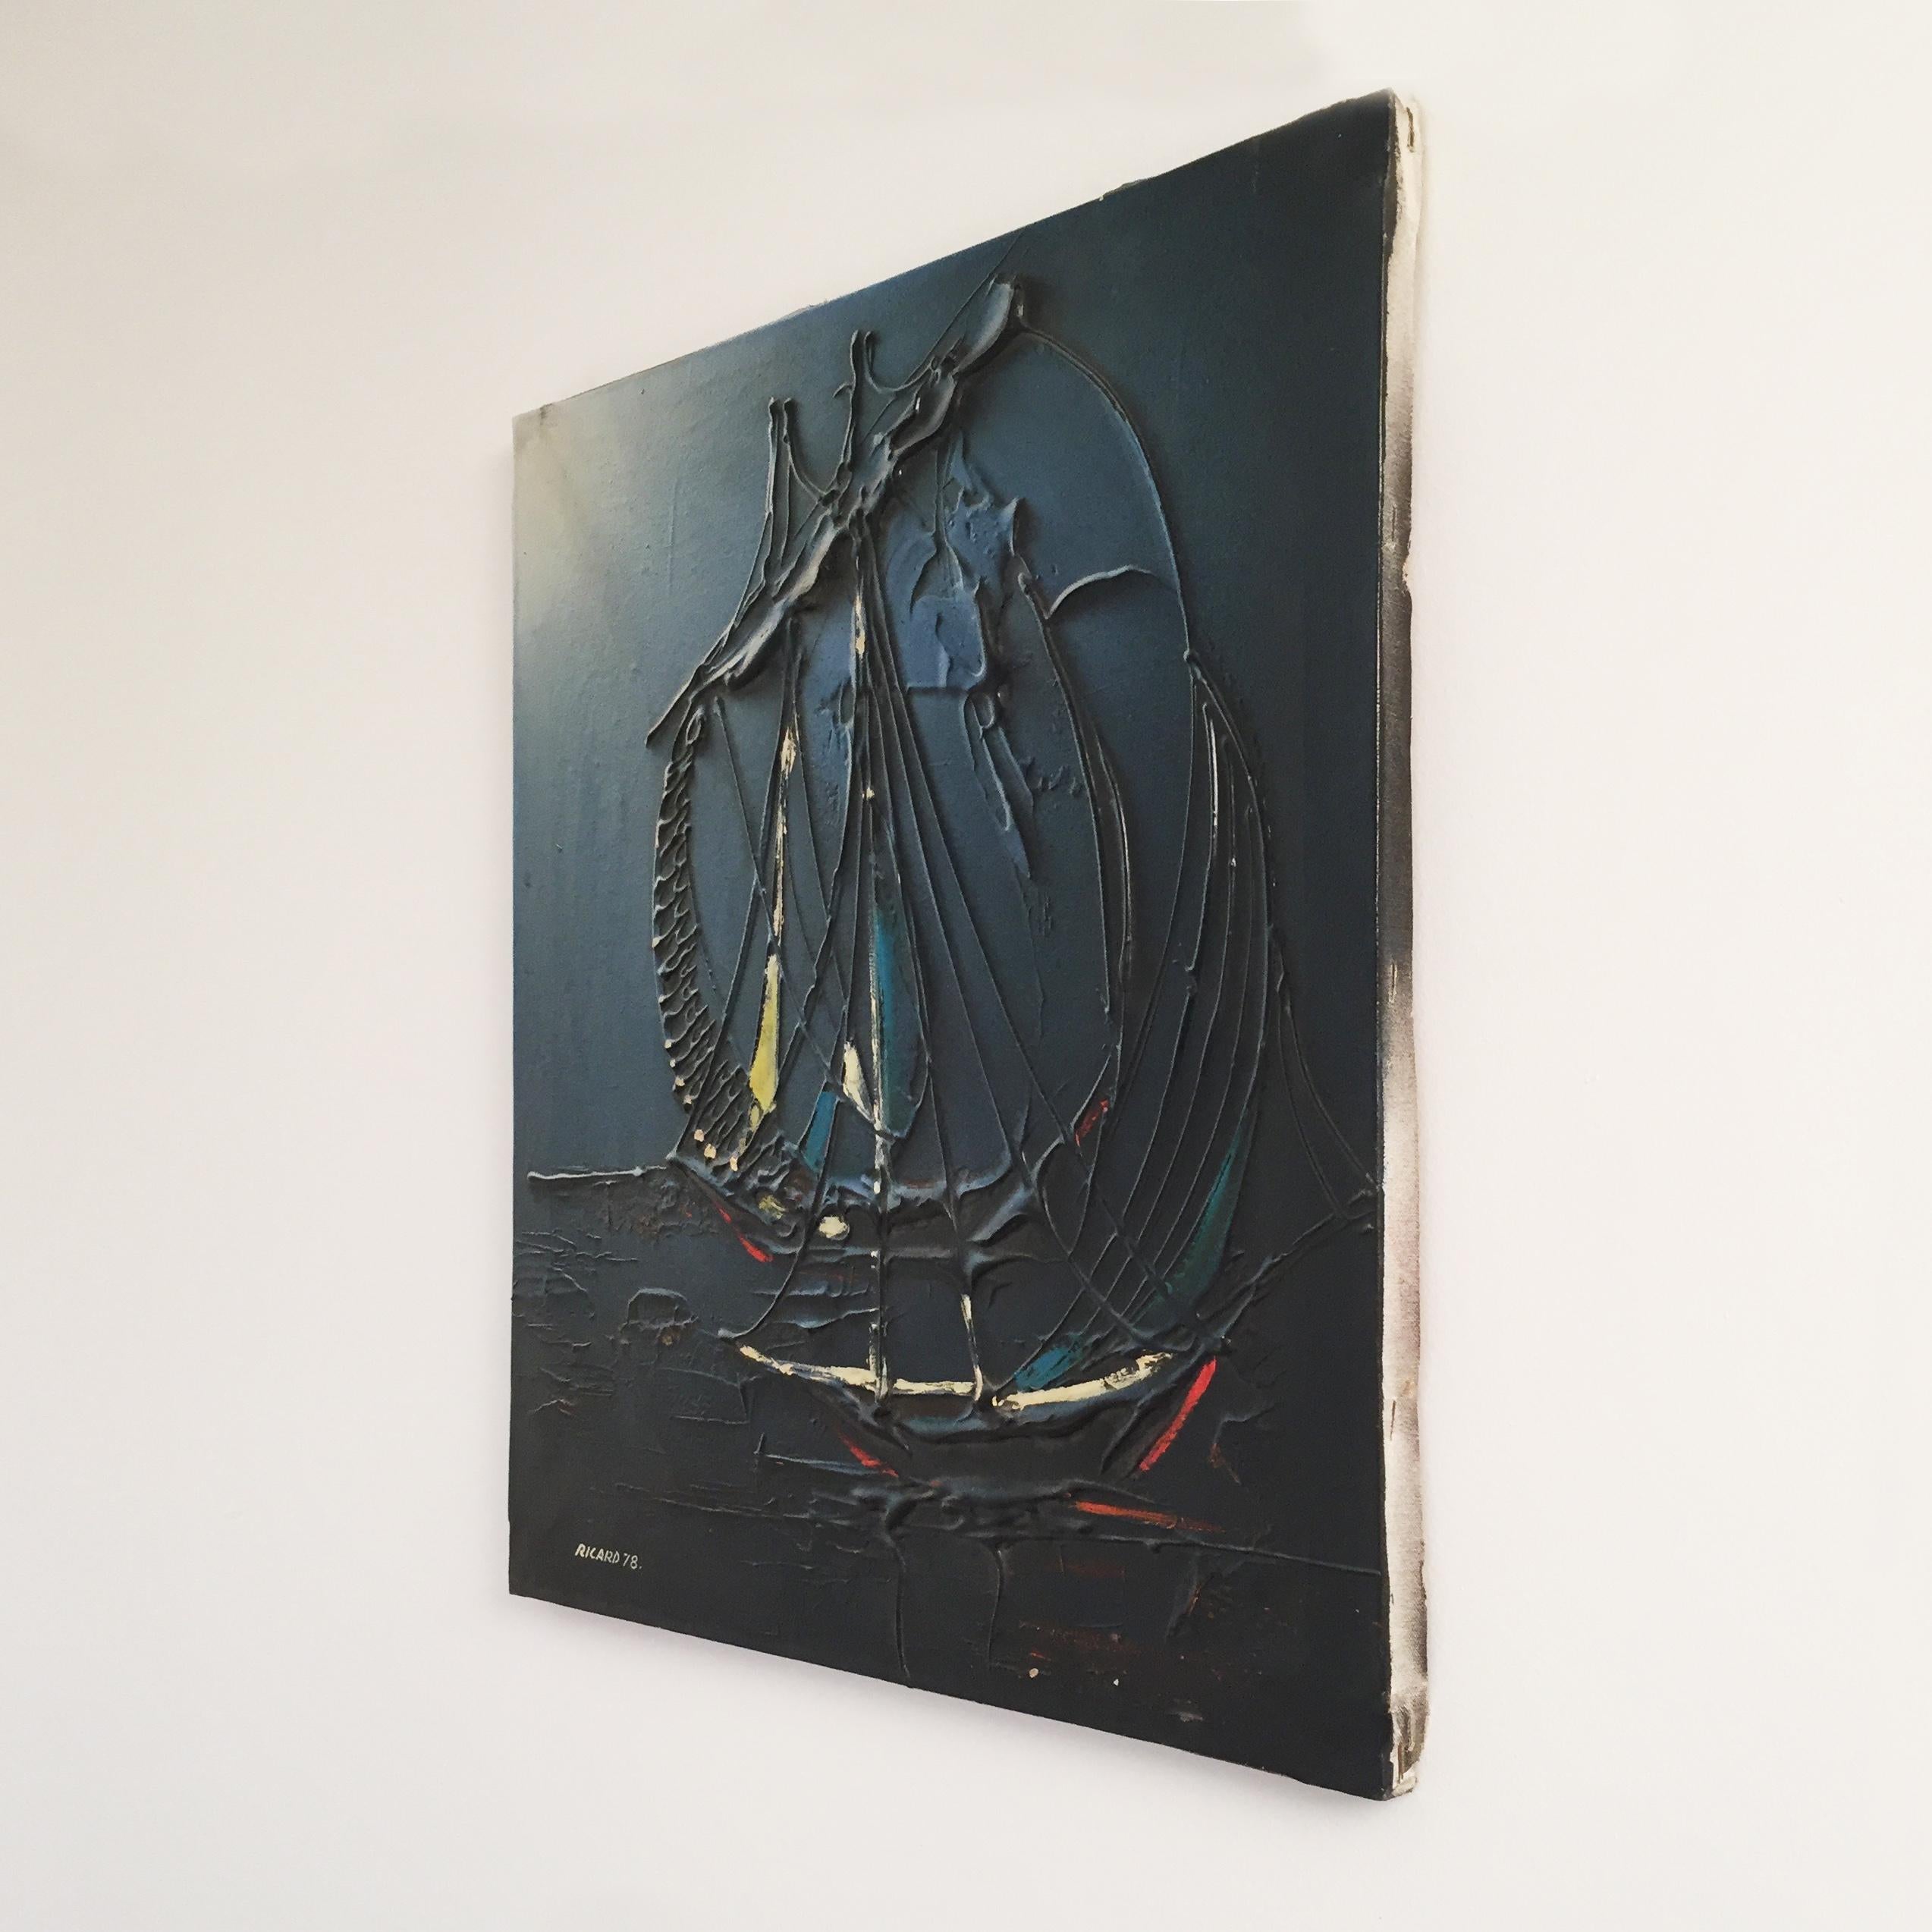 Peinture acrylique sur toile représentant un bateau abstrait dans la nuit, avec des teintes bleues et noires profondes. La peinture acrylique est gaufrée par endroits, ce qui lui confère une profondeur de texture. Signé 